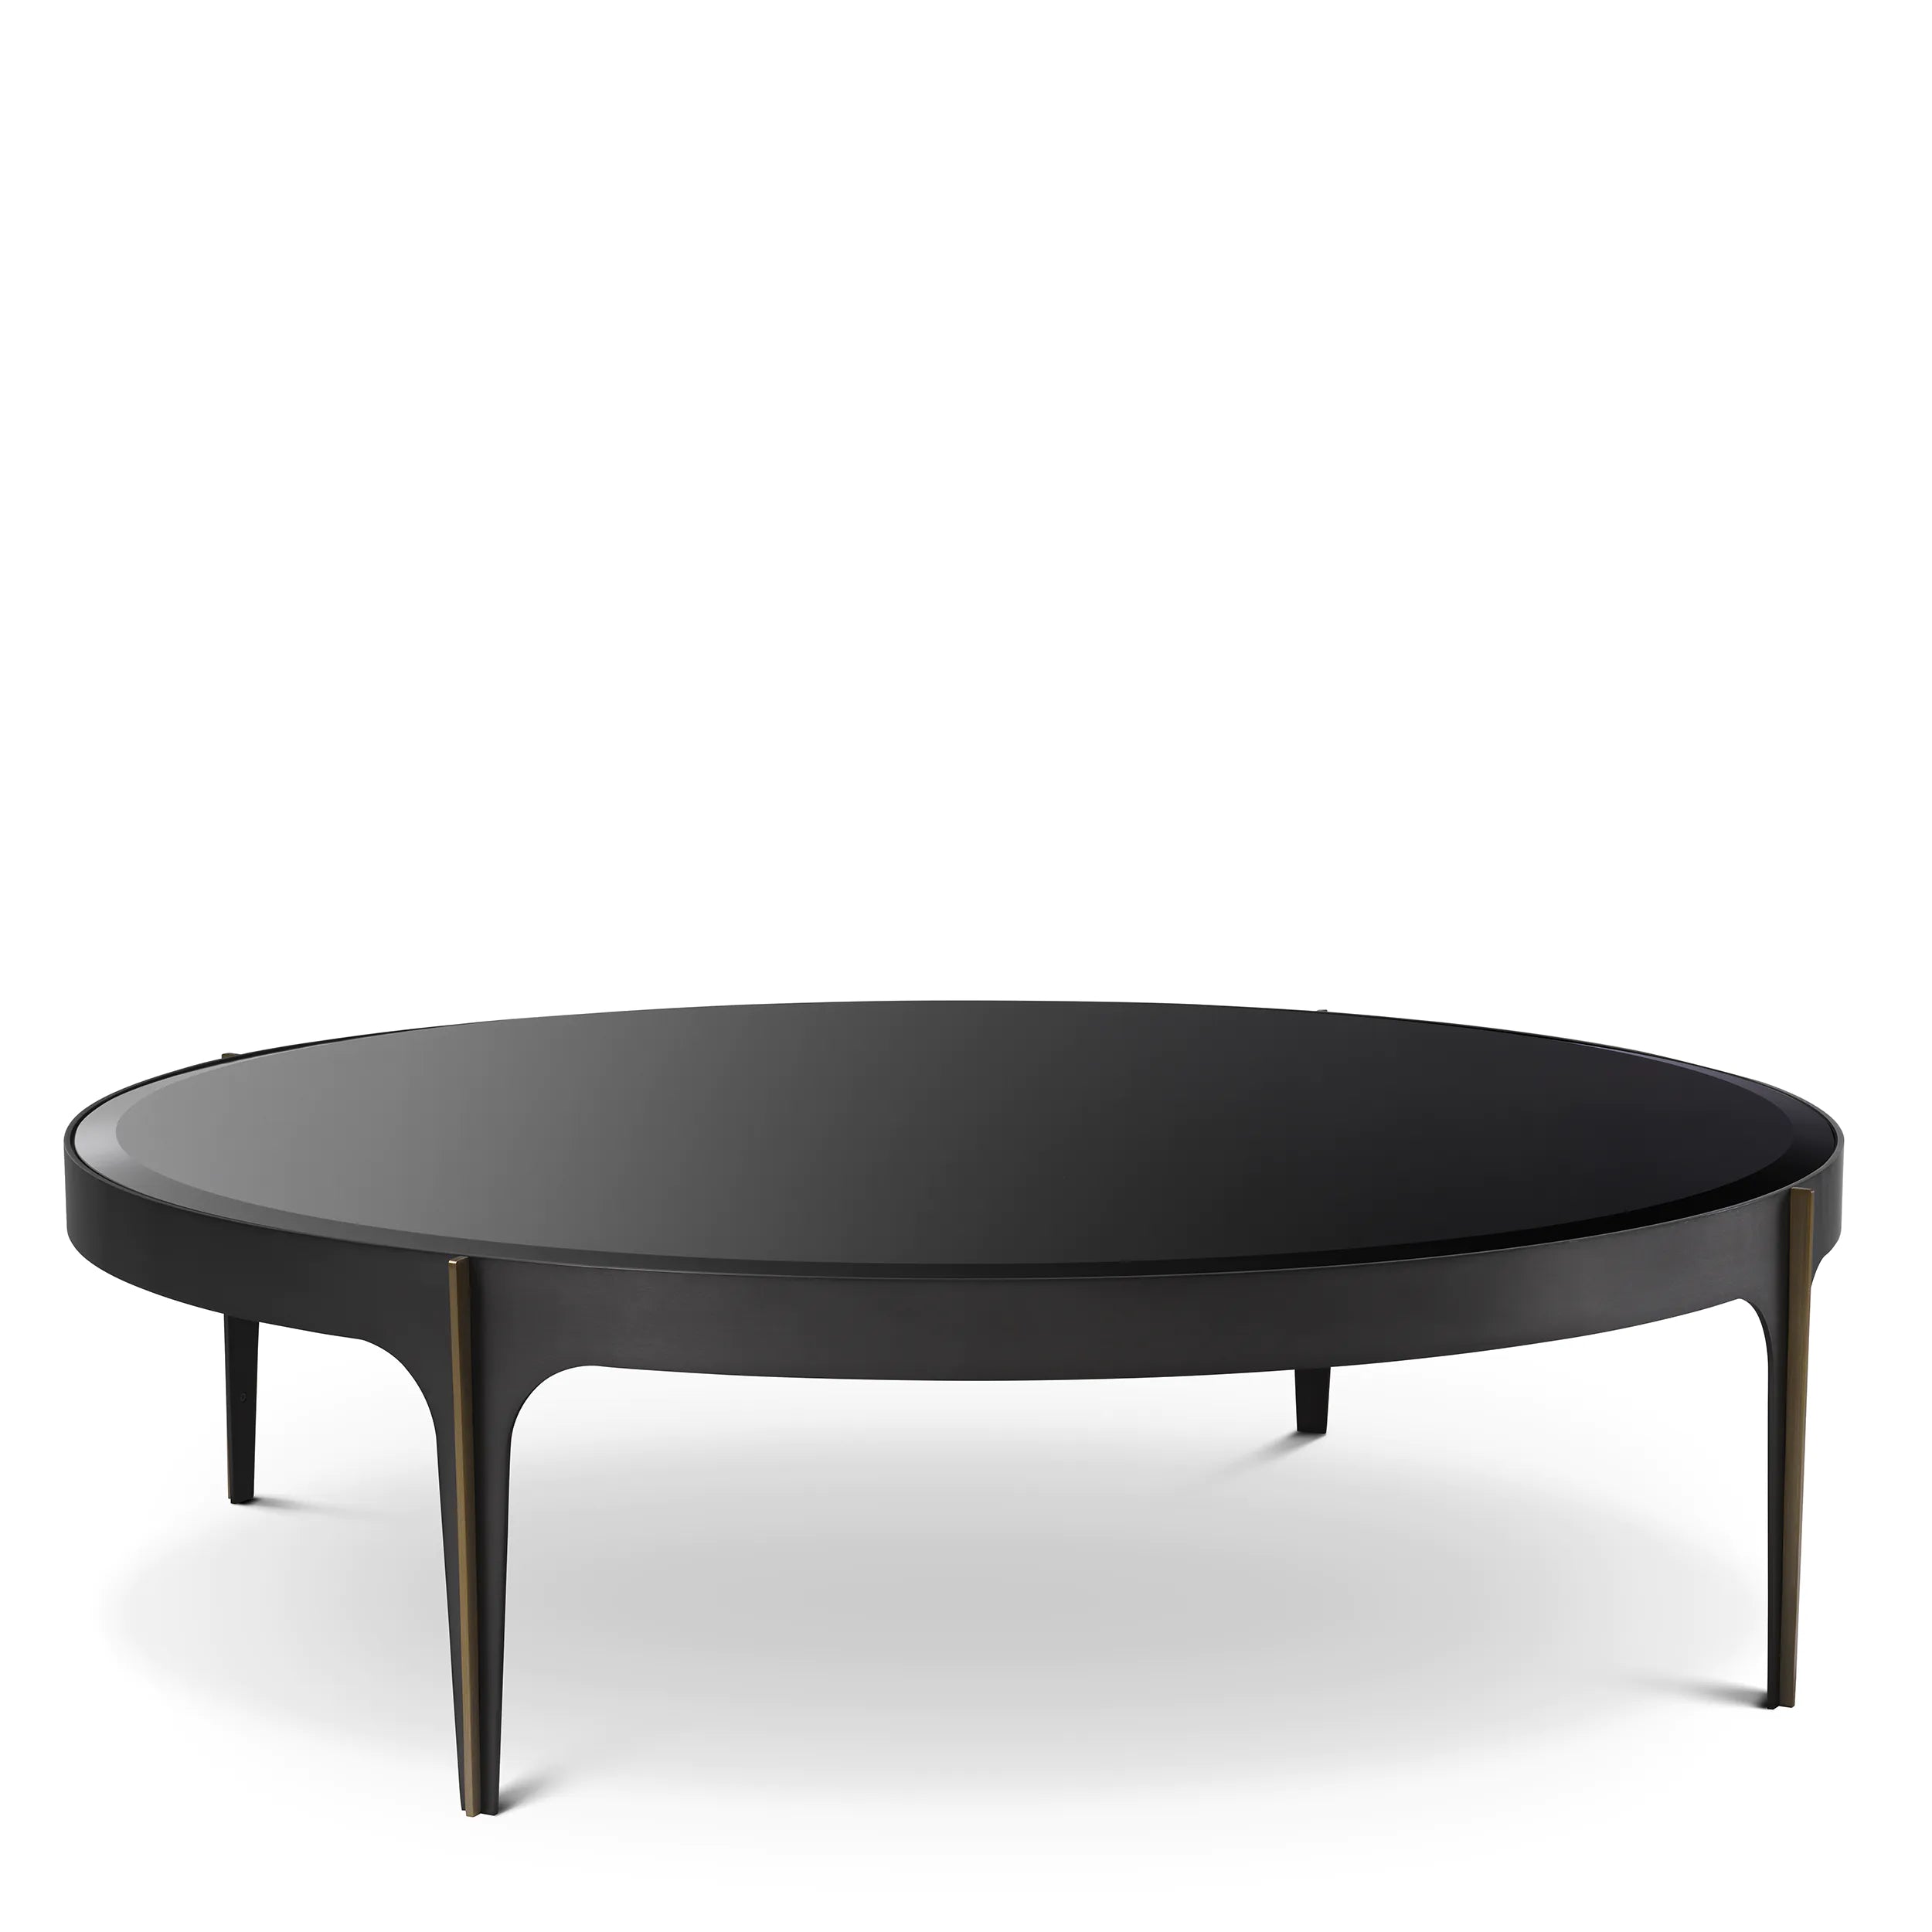 ARTEMISA COFFEE TABLE - Hedi's Furniture